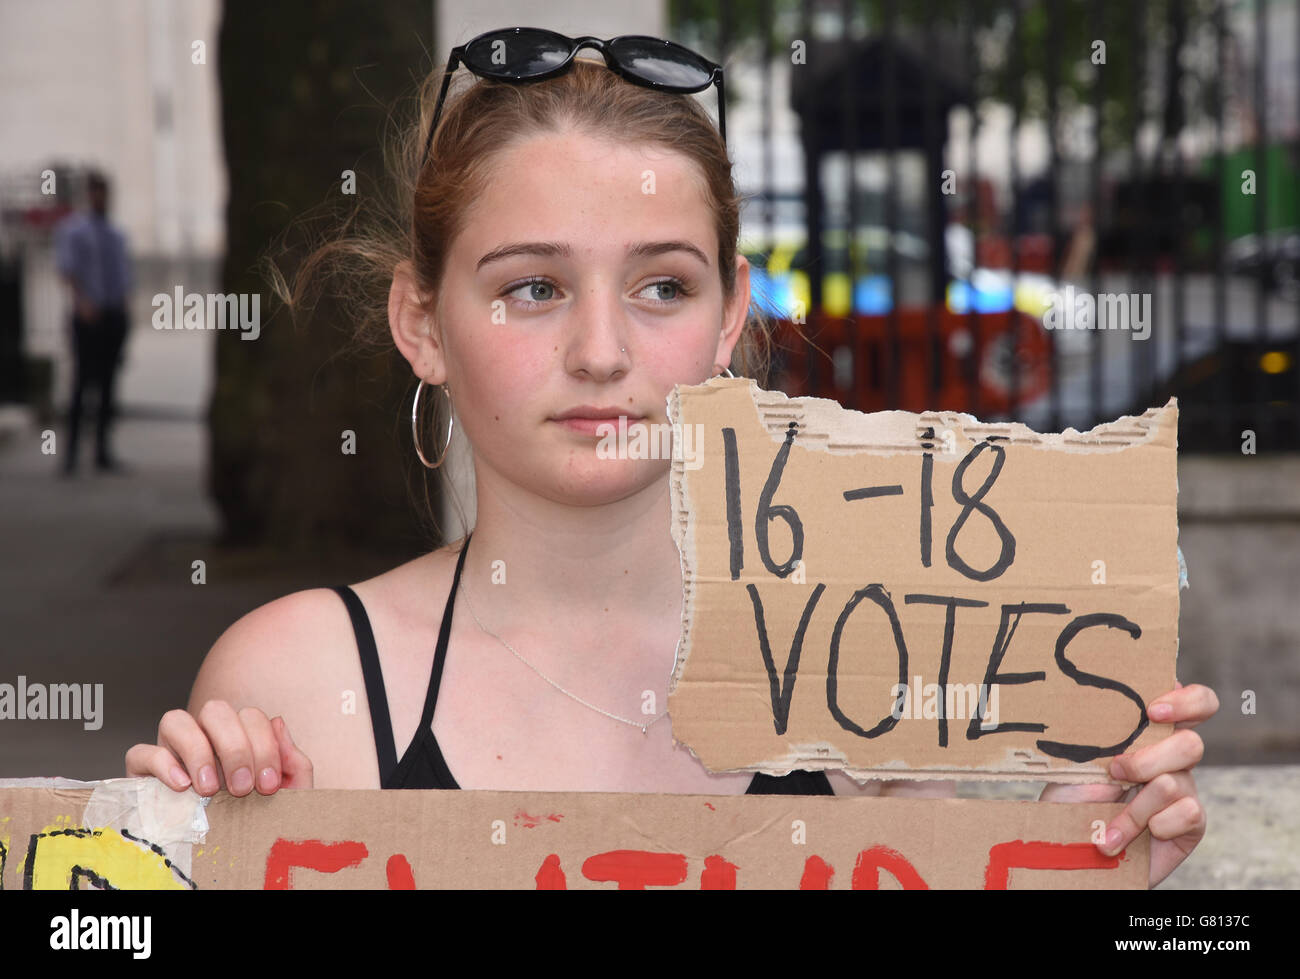 Los adolescentes protestan contra el Brexit y el derecho de los niños de 16-17 años a votar. Frente al número 10 Downing Street, Whitehall, Londres. REINO UNIDO Foto de stock